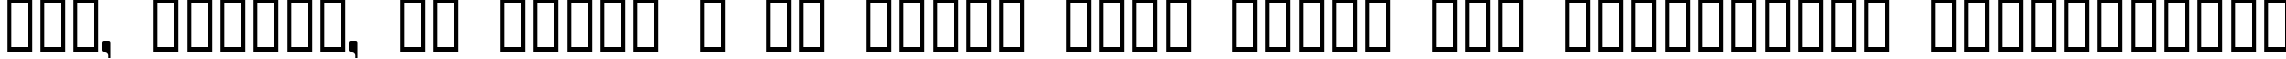 Пример написания шрифтом Helldorado текста на украинском